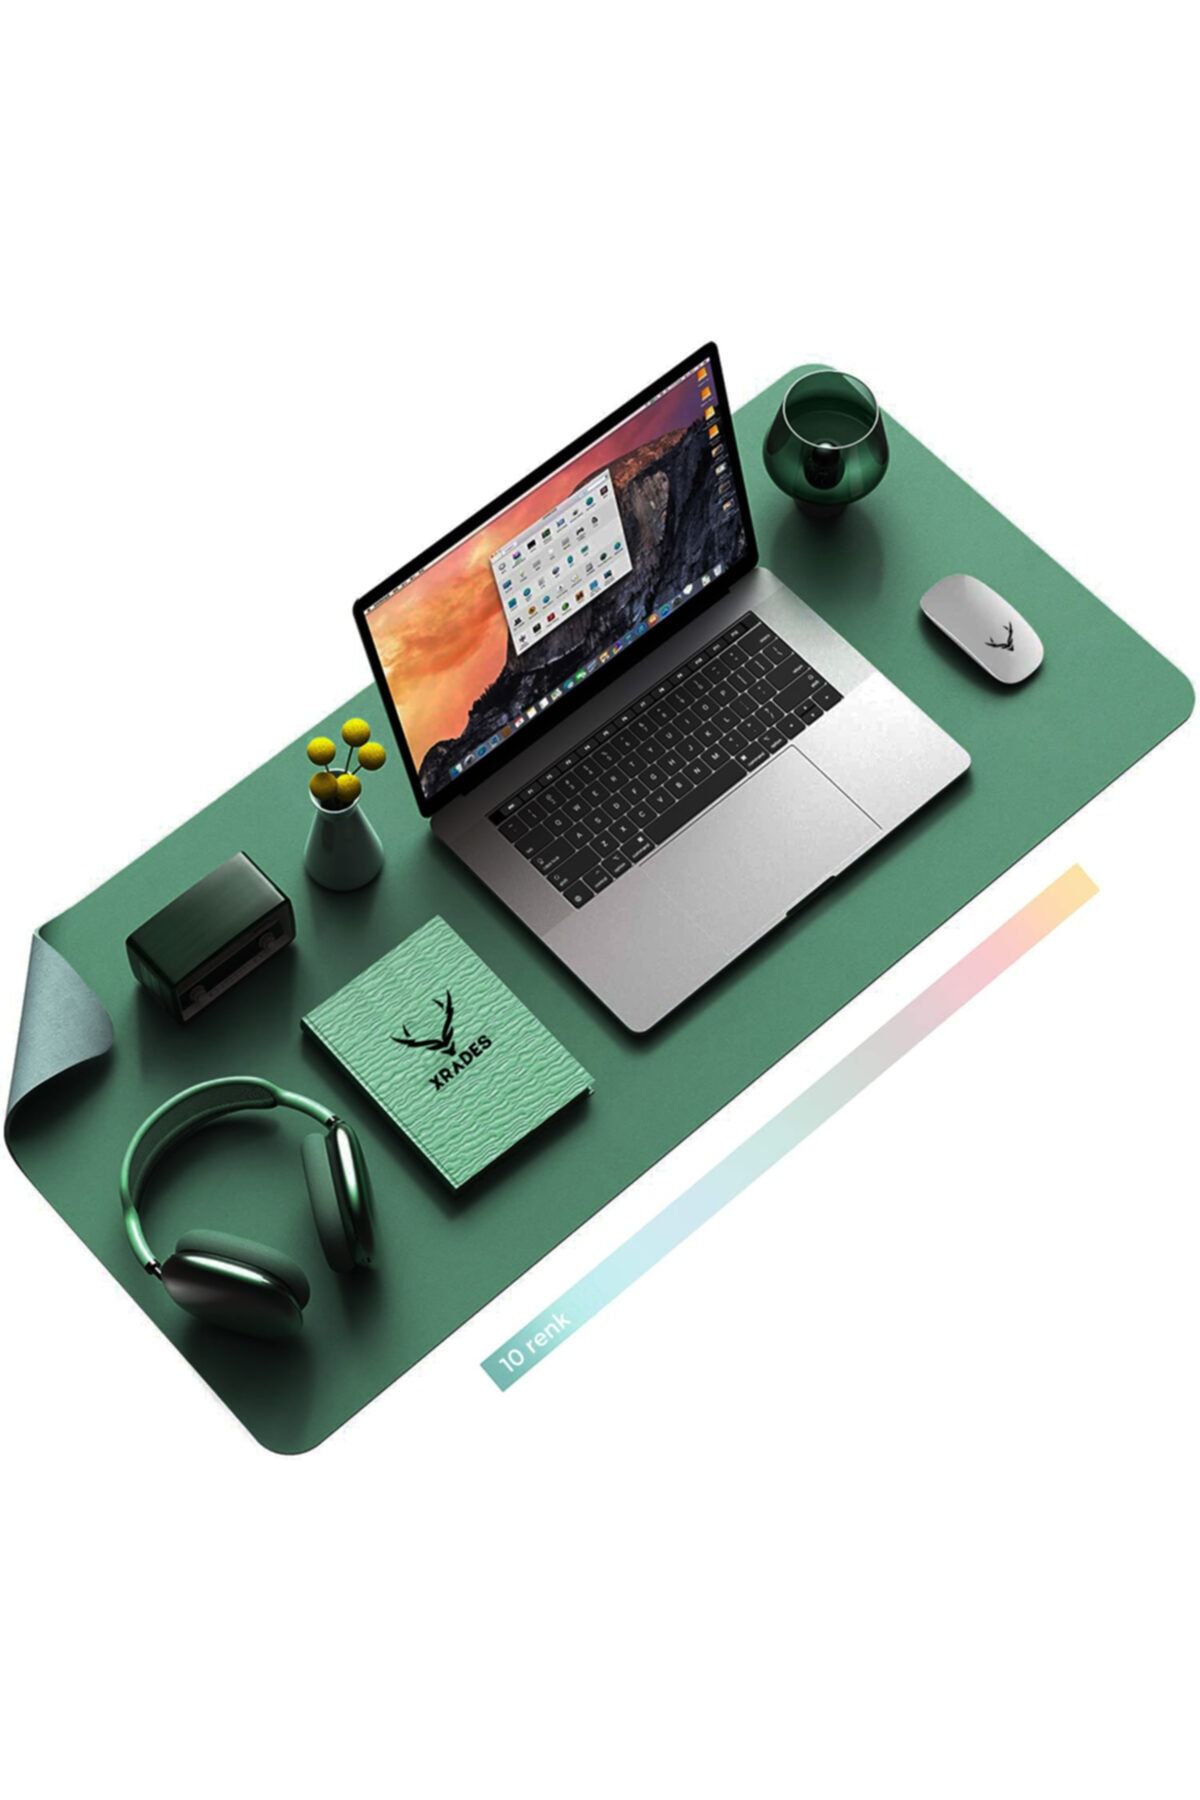 Xrades Deri Mousepad Laptop Bilgisayar Için Geniş Masa Matı Deri Mouse Pad 80x40 Cm Koyu Yeşil